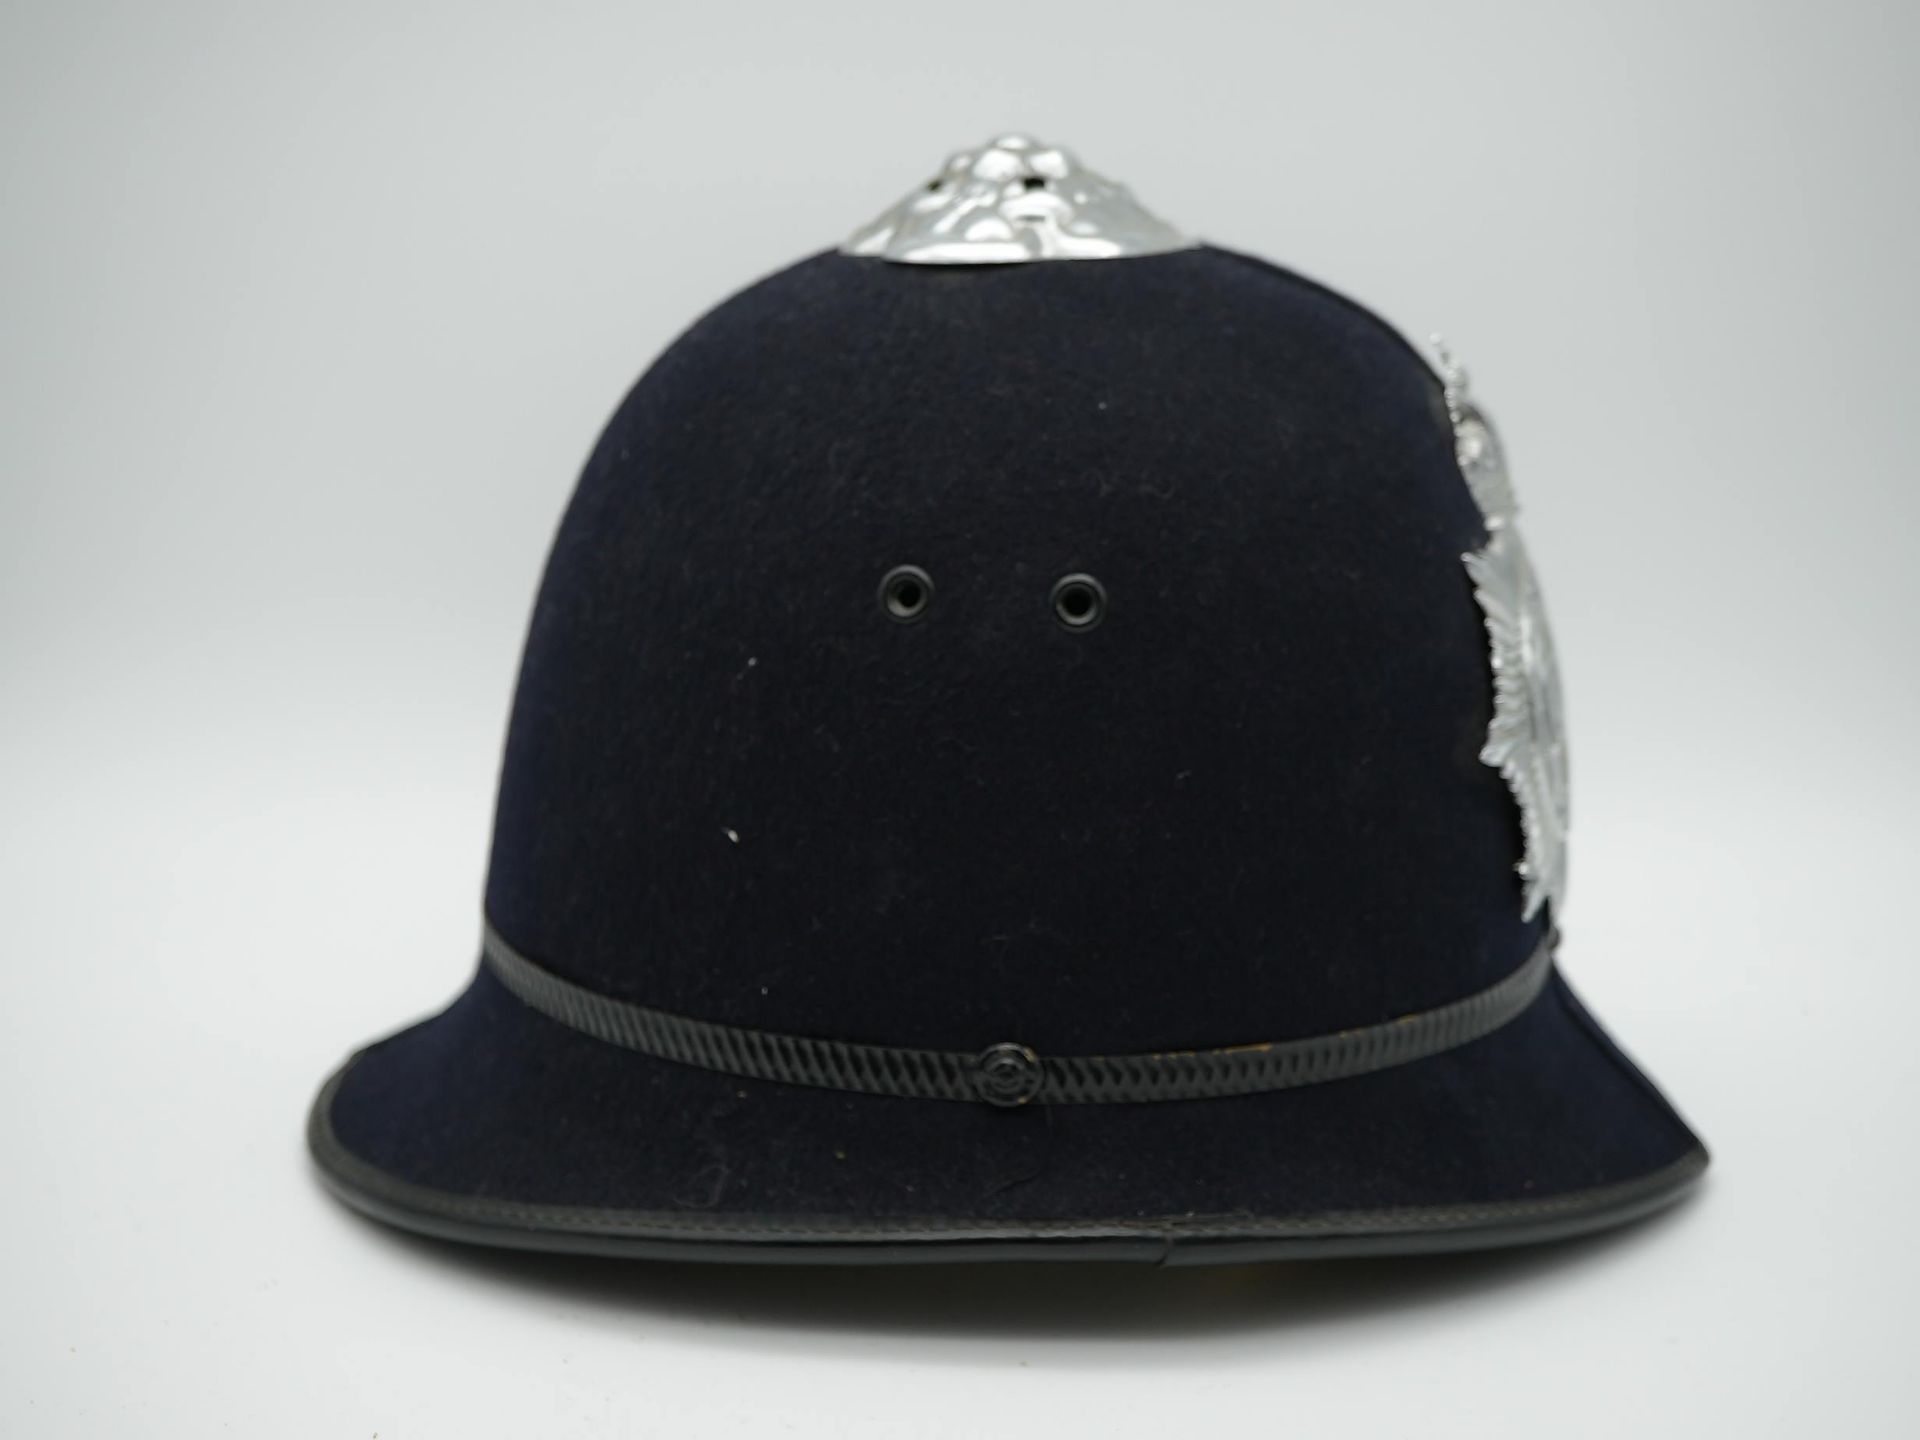 Metropolitan Police Helm - Image 4 of 7